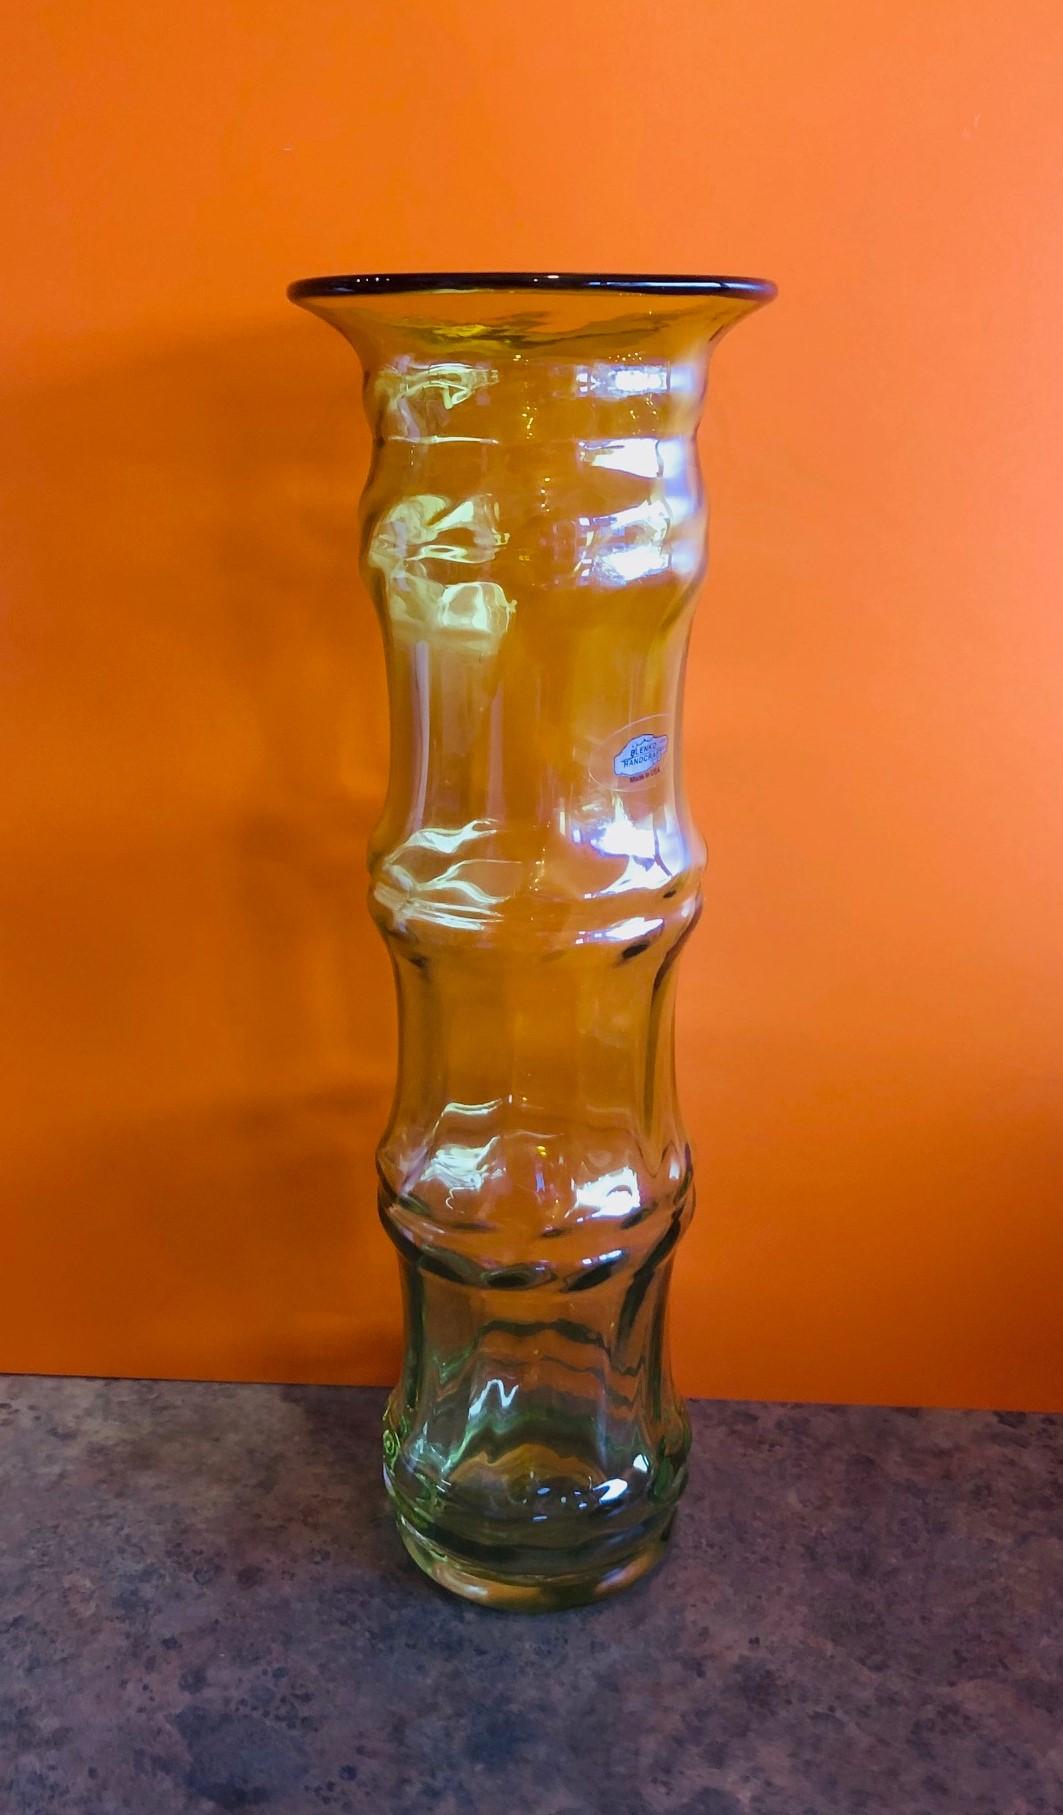 Handgeblasene gelb-goldene Kunstglasvase von Don Shepherd für Blenko Glass, um 2005. Dieses bambusförmige Design wurde ursprünglich in den späten 1970er Jahren von Don Shepherd für ein Jahr eingeführt. 2003 wurde das Design in einer kleineren